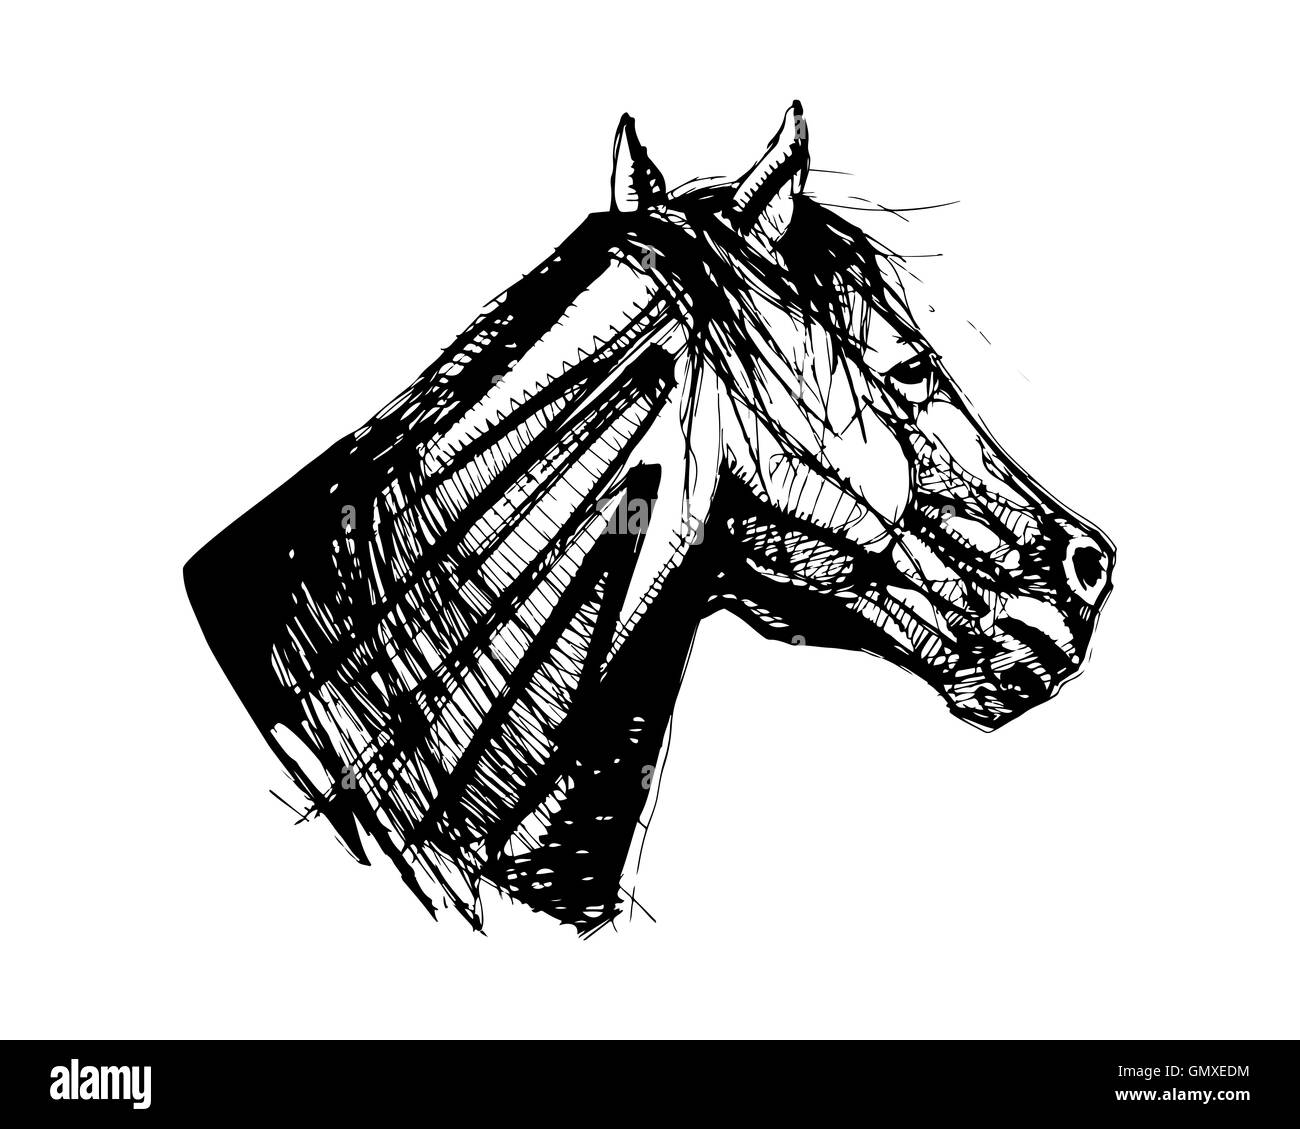 Illustration à la main ou d'un dessin d'une tête de cheval Banque D'Images